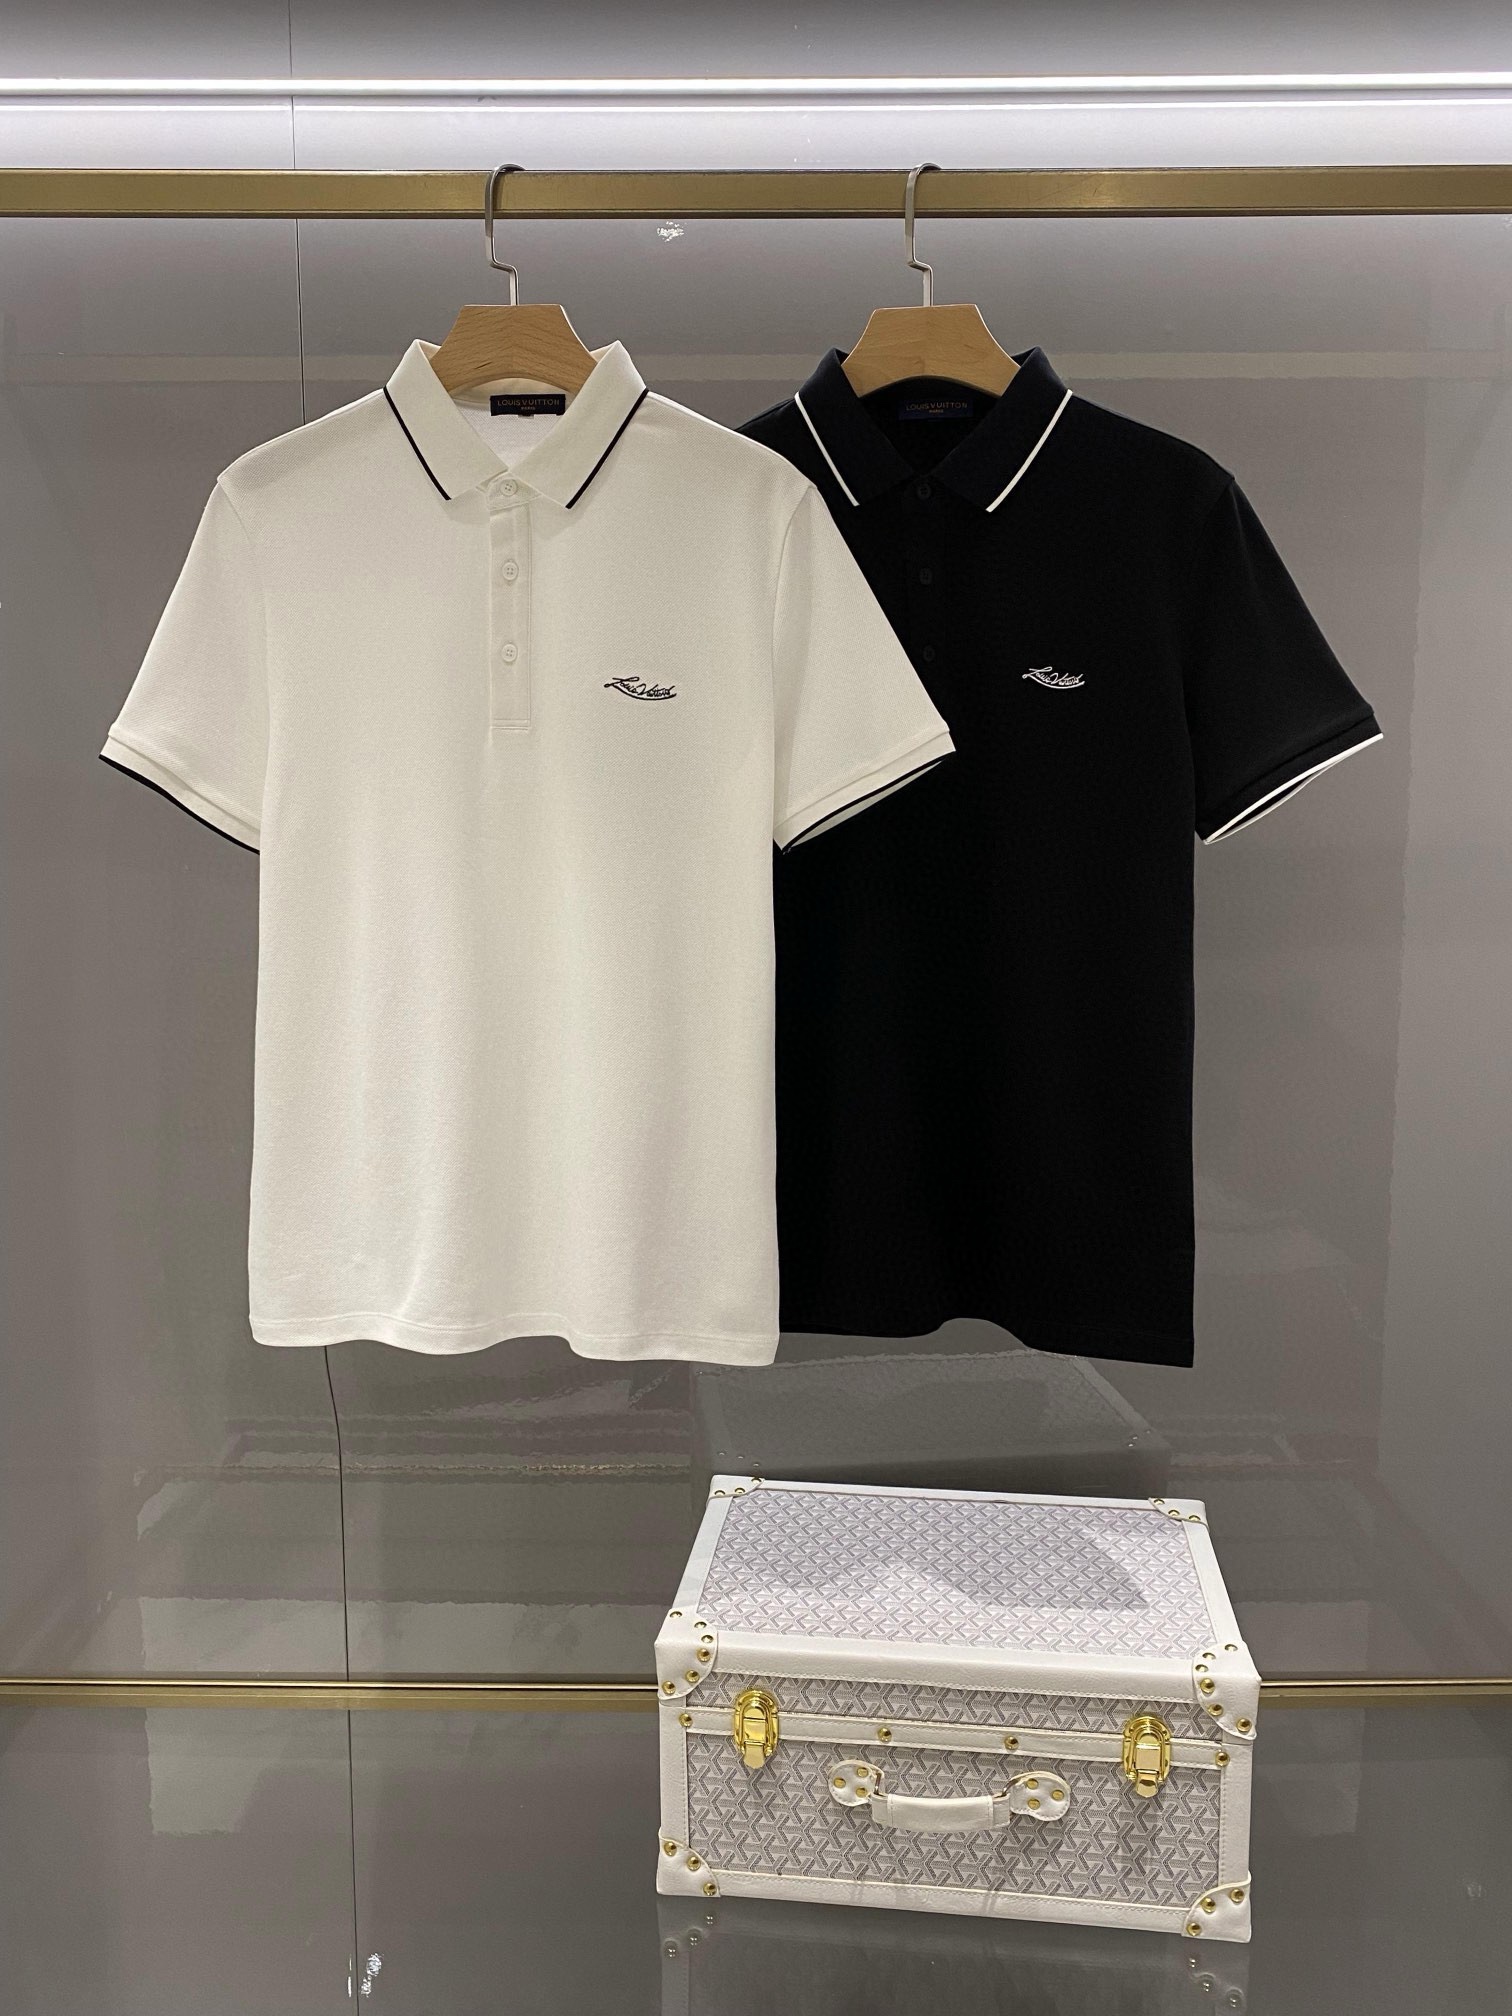 Louis Vuitton Vêtements T-Shirt Noir Blanc Broderie de fleurs Hommes Coton Tricot Série d’été Fashion Manches courtes